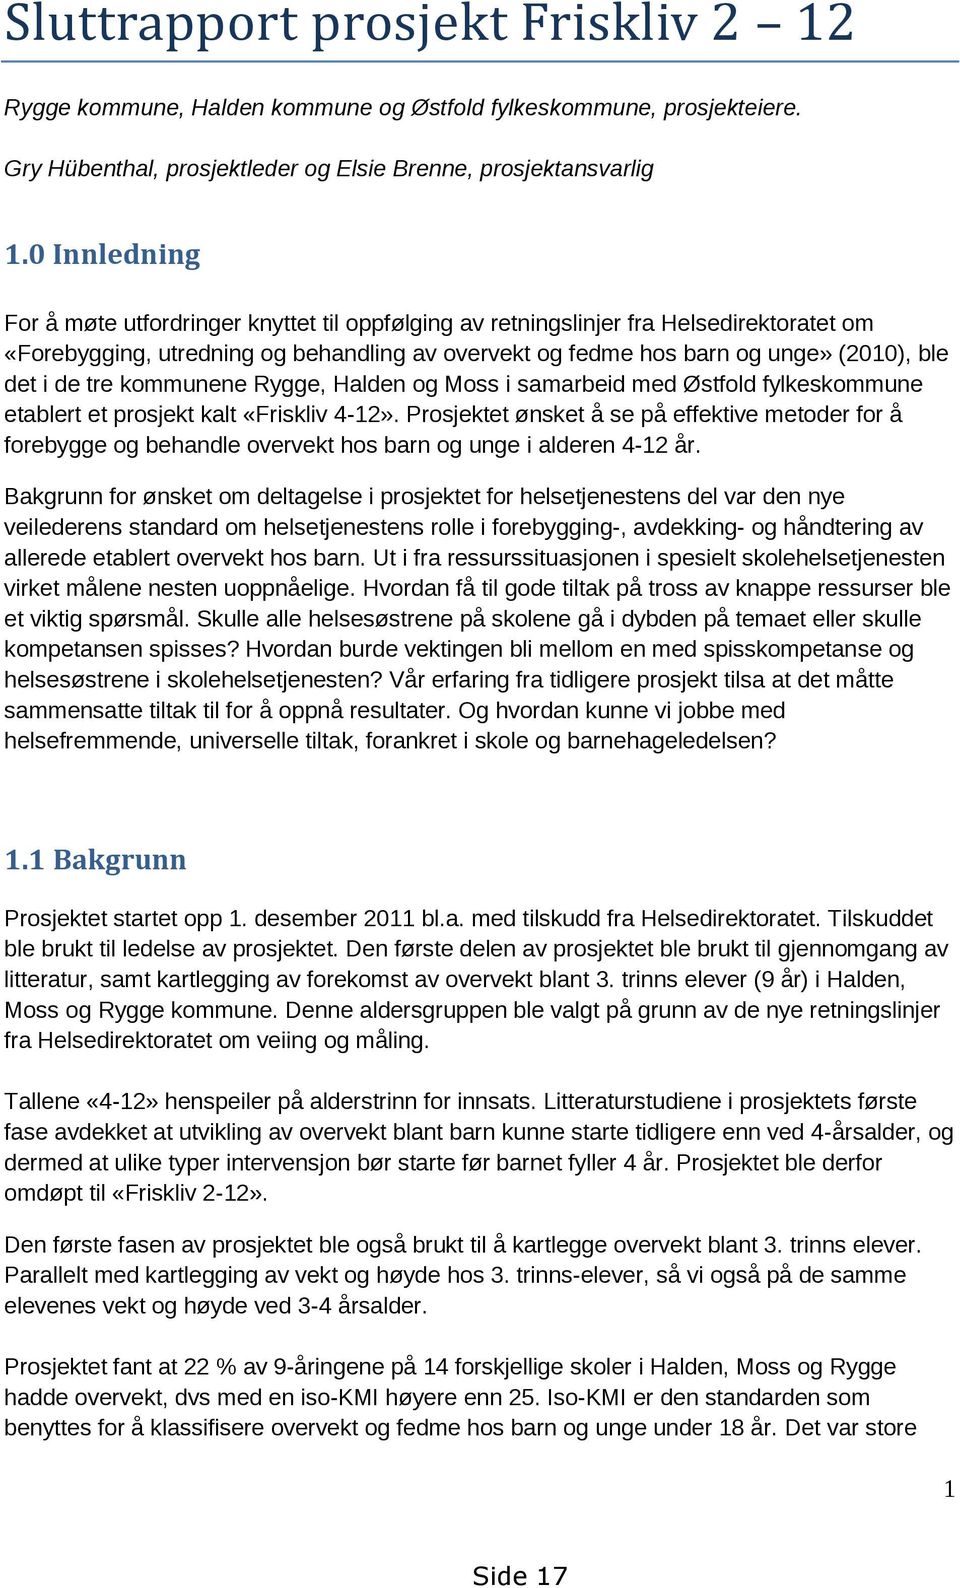 de tre kommunene Rygge, Halden og Moss i samarbeid med Østfold fylkeskommune etablert et prosjekt kalt «Friskliv 4-12».